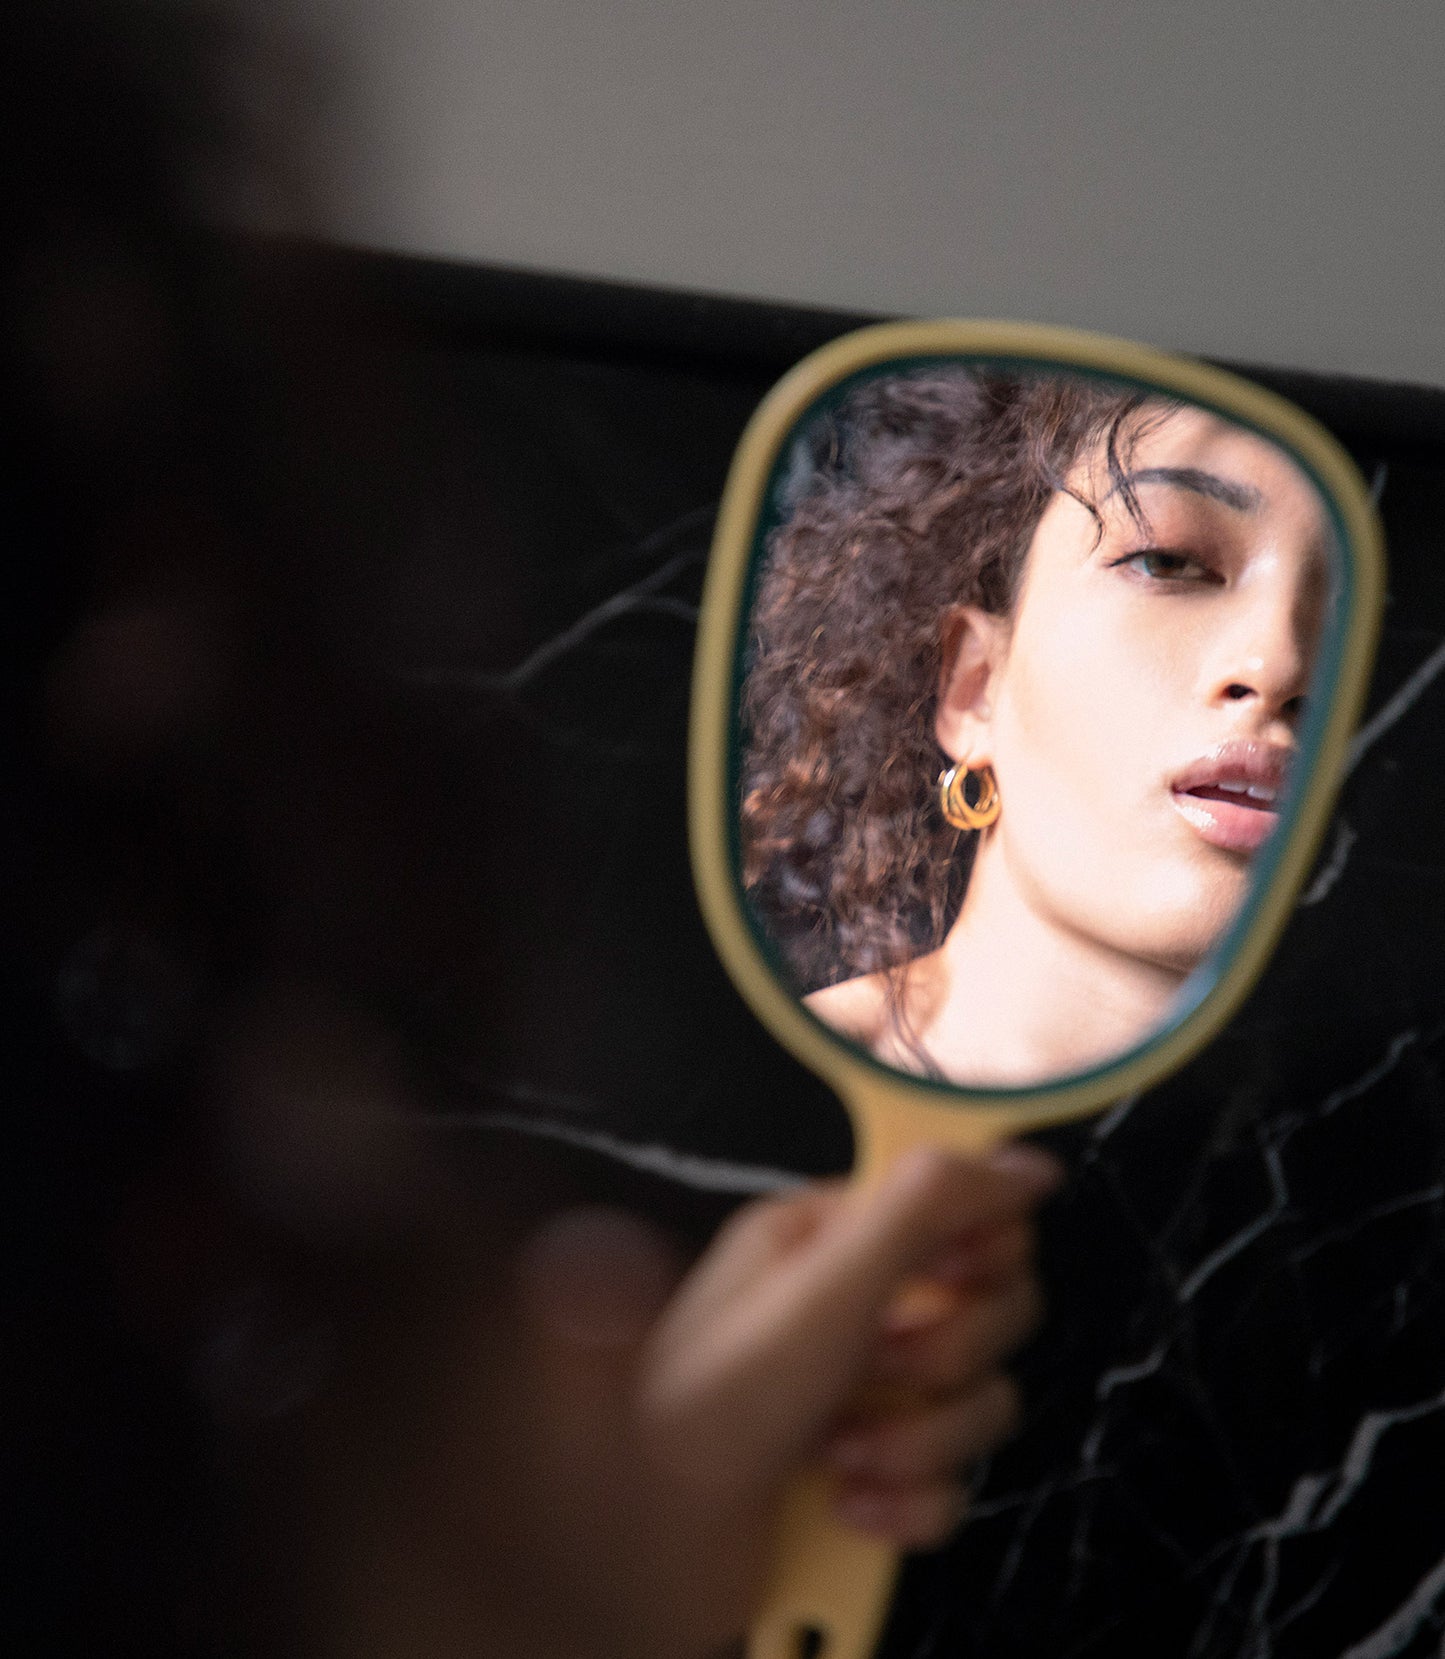 Woman looking in handheld mirror